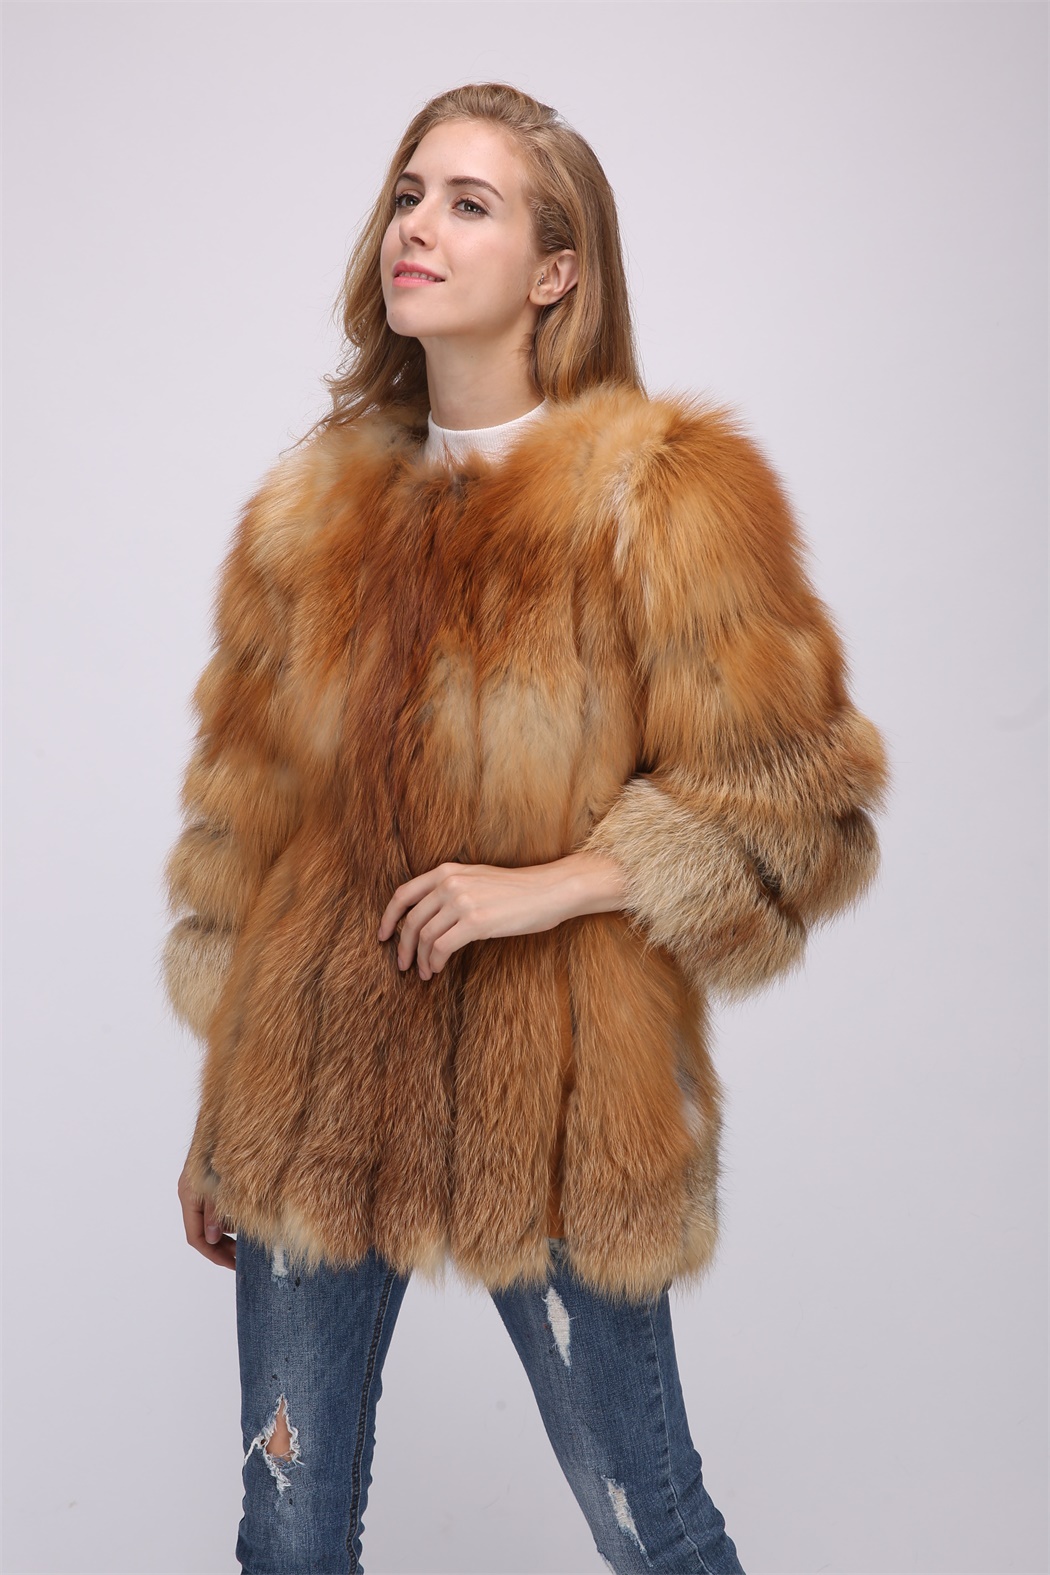 red fox fur coat 1708163 â Lvcomeff